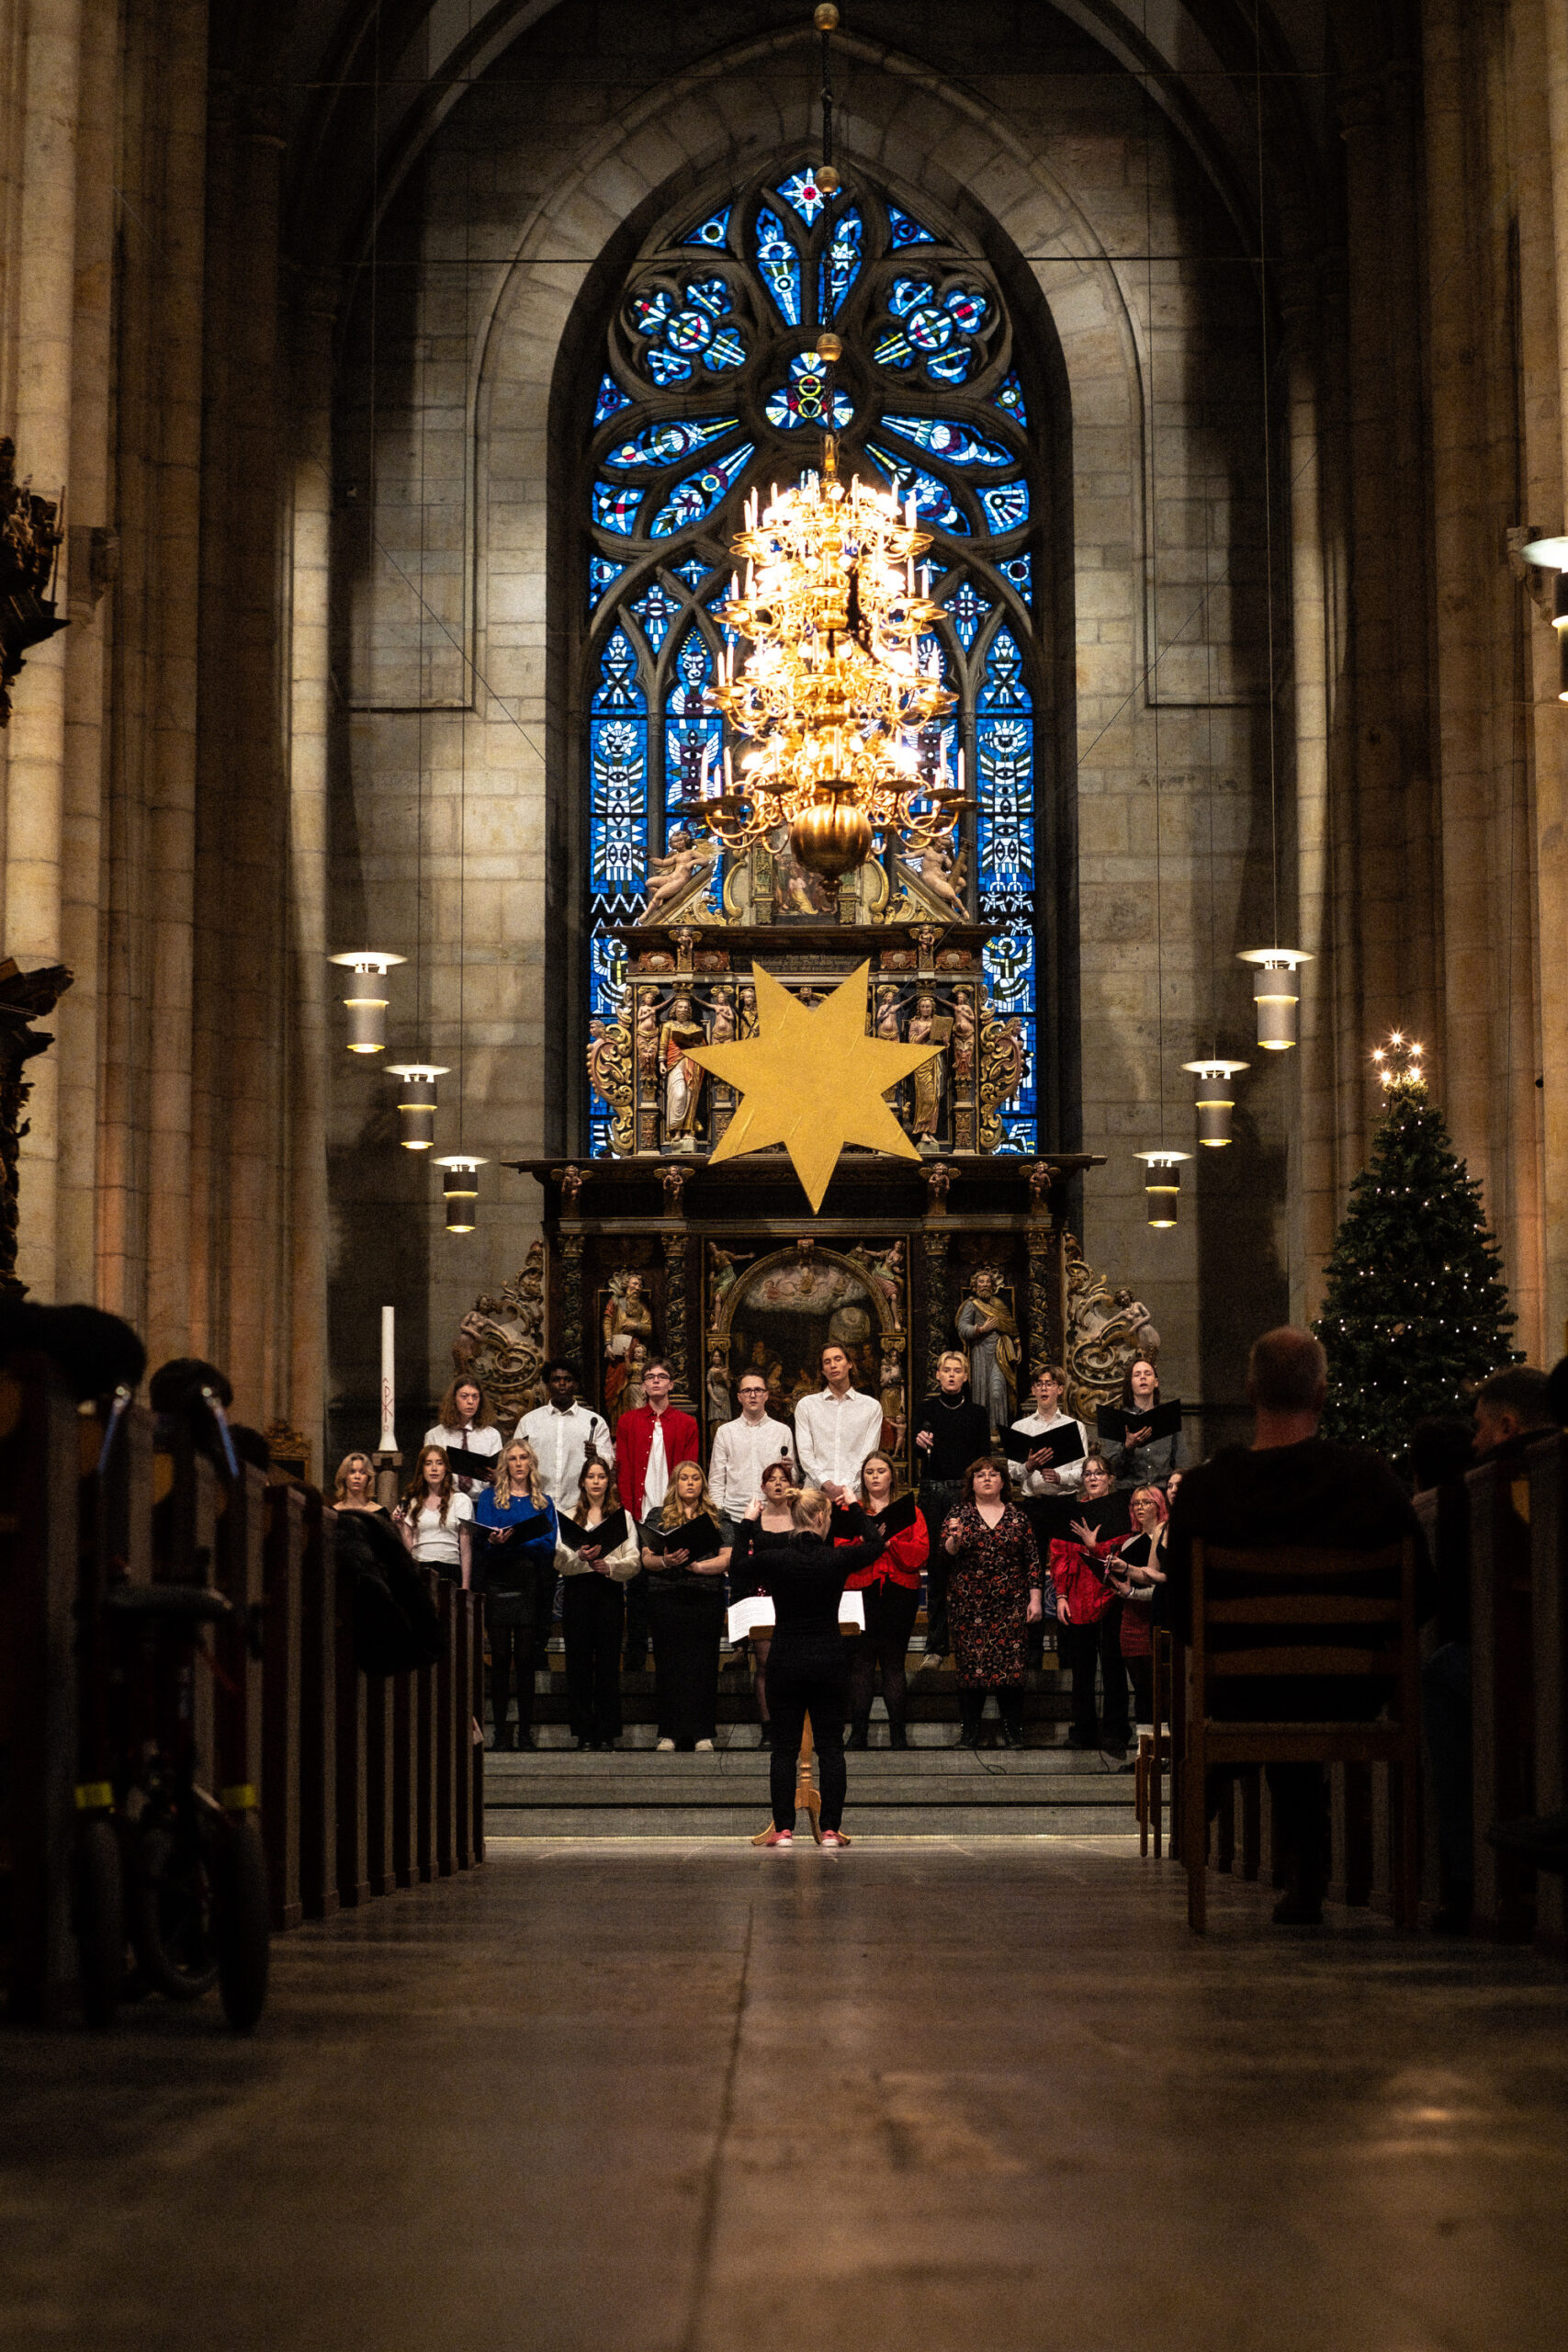 Årets julkonsert i Olinsgymnasiets regi går av stapeln onsdag kväll i domkyrkan